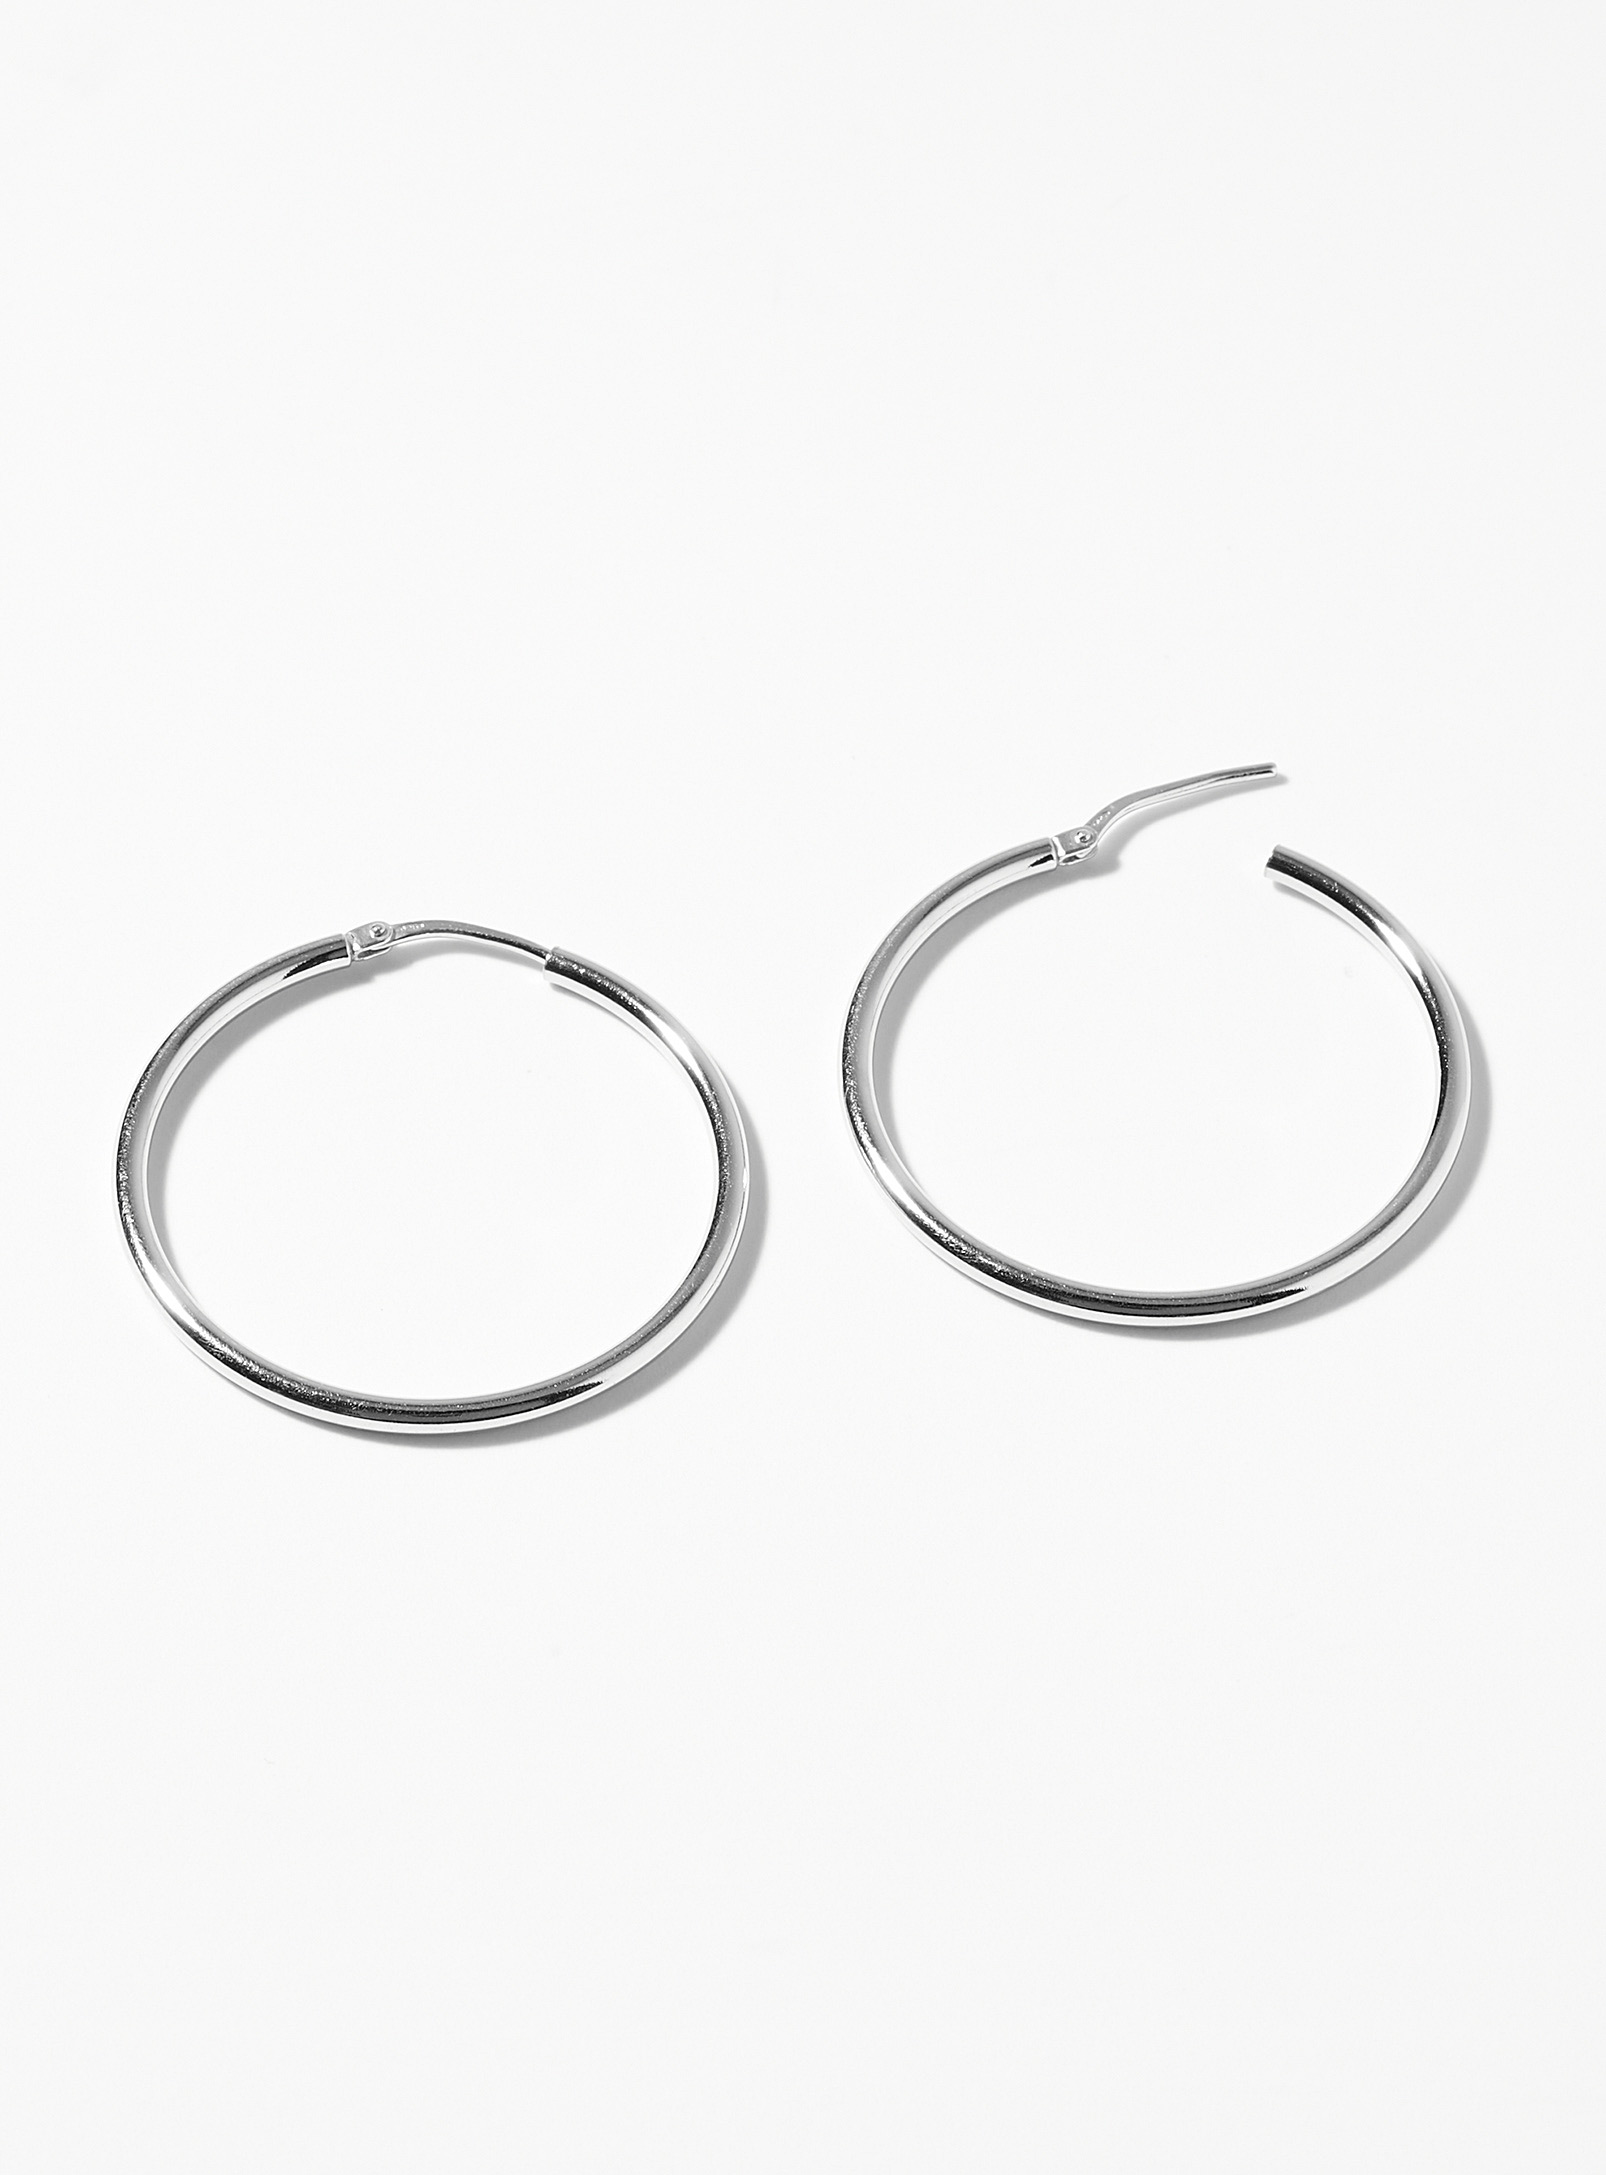 Simons - Women's Fine silver Hoop Earrings